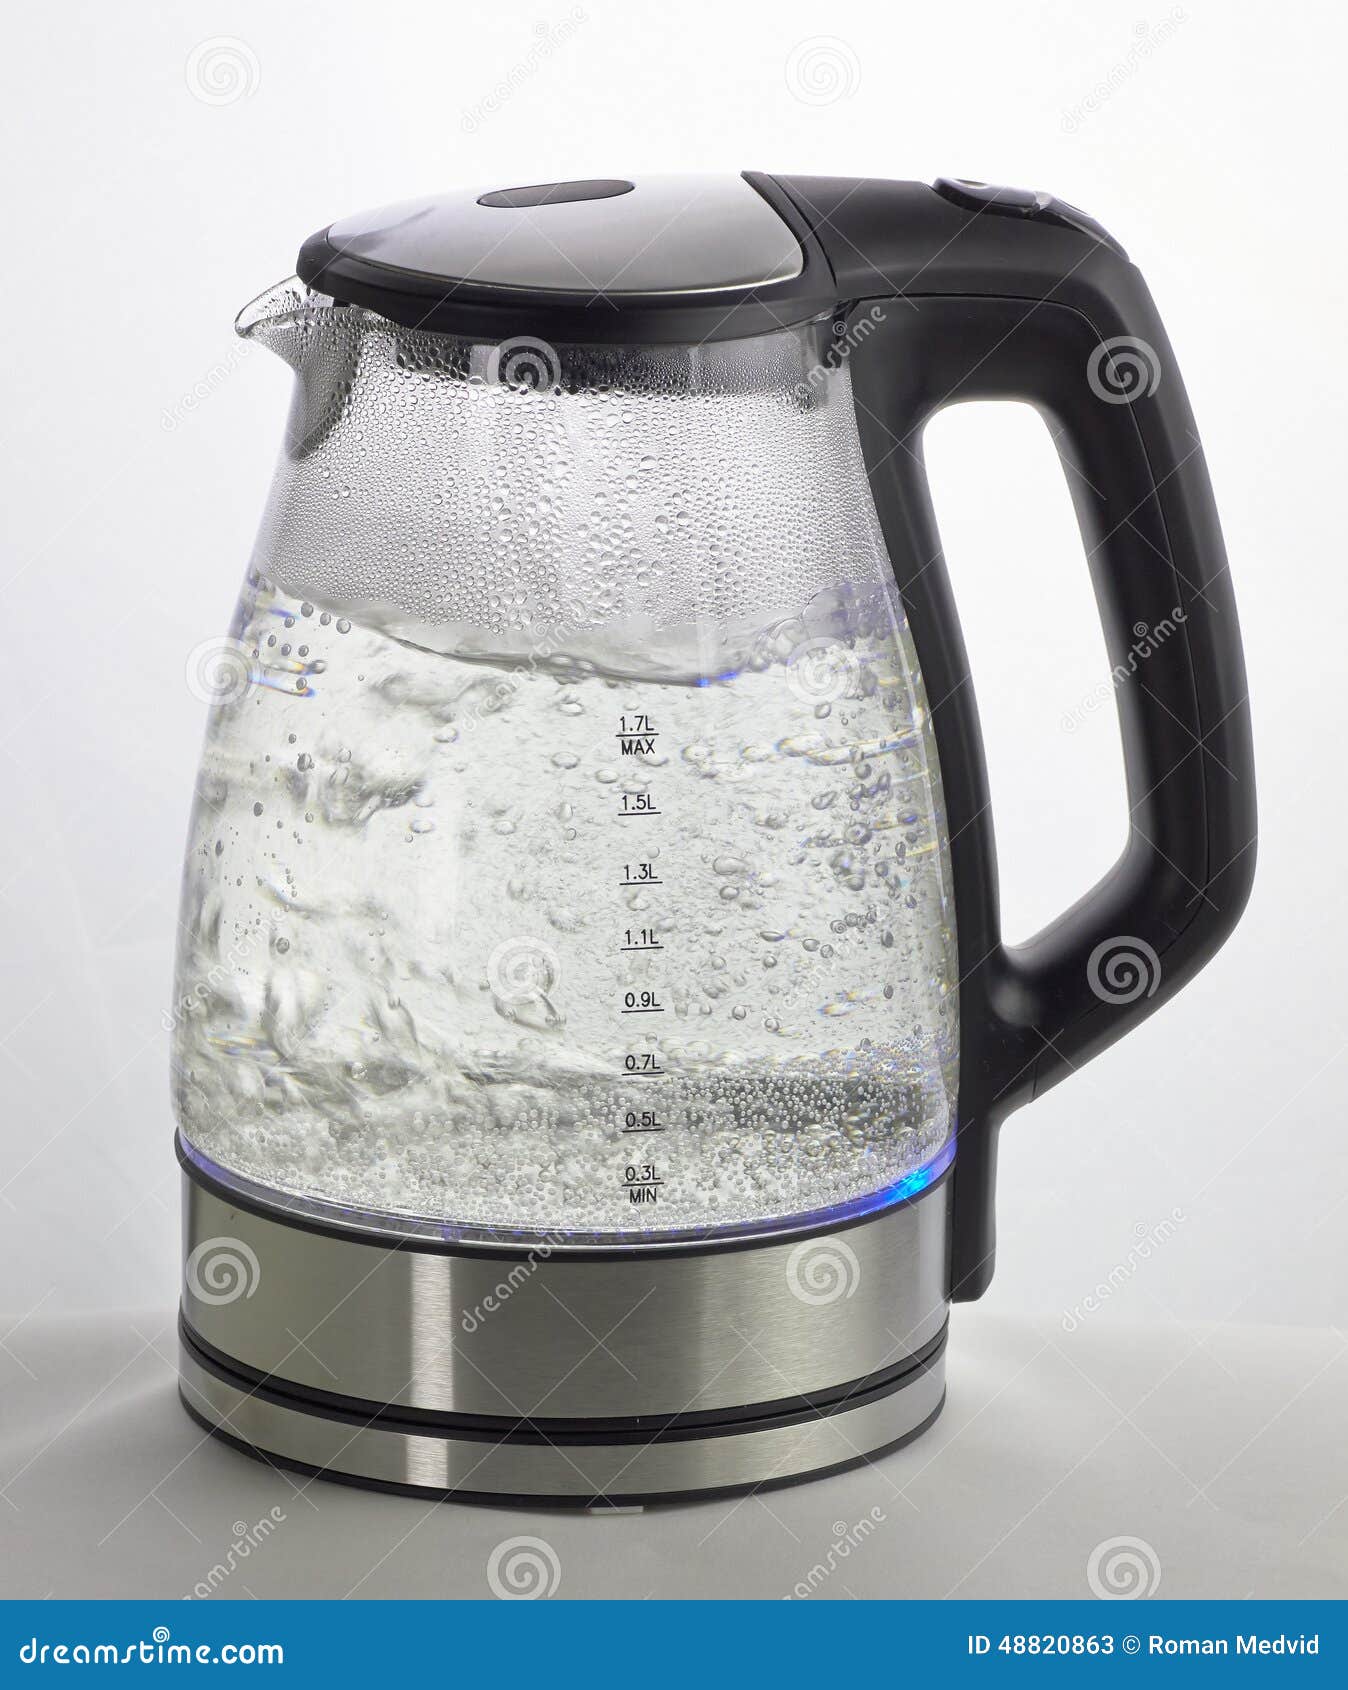 Кипяченая в чайнике вода. Электрический чайник Sutai St-2088. Чайник прозрачный с водой. Электро чайник вскипел. Чайник с кипятком.